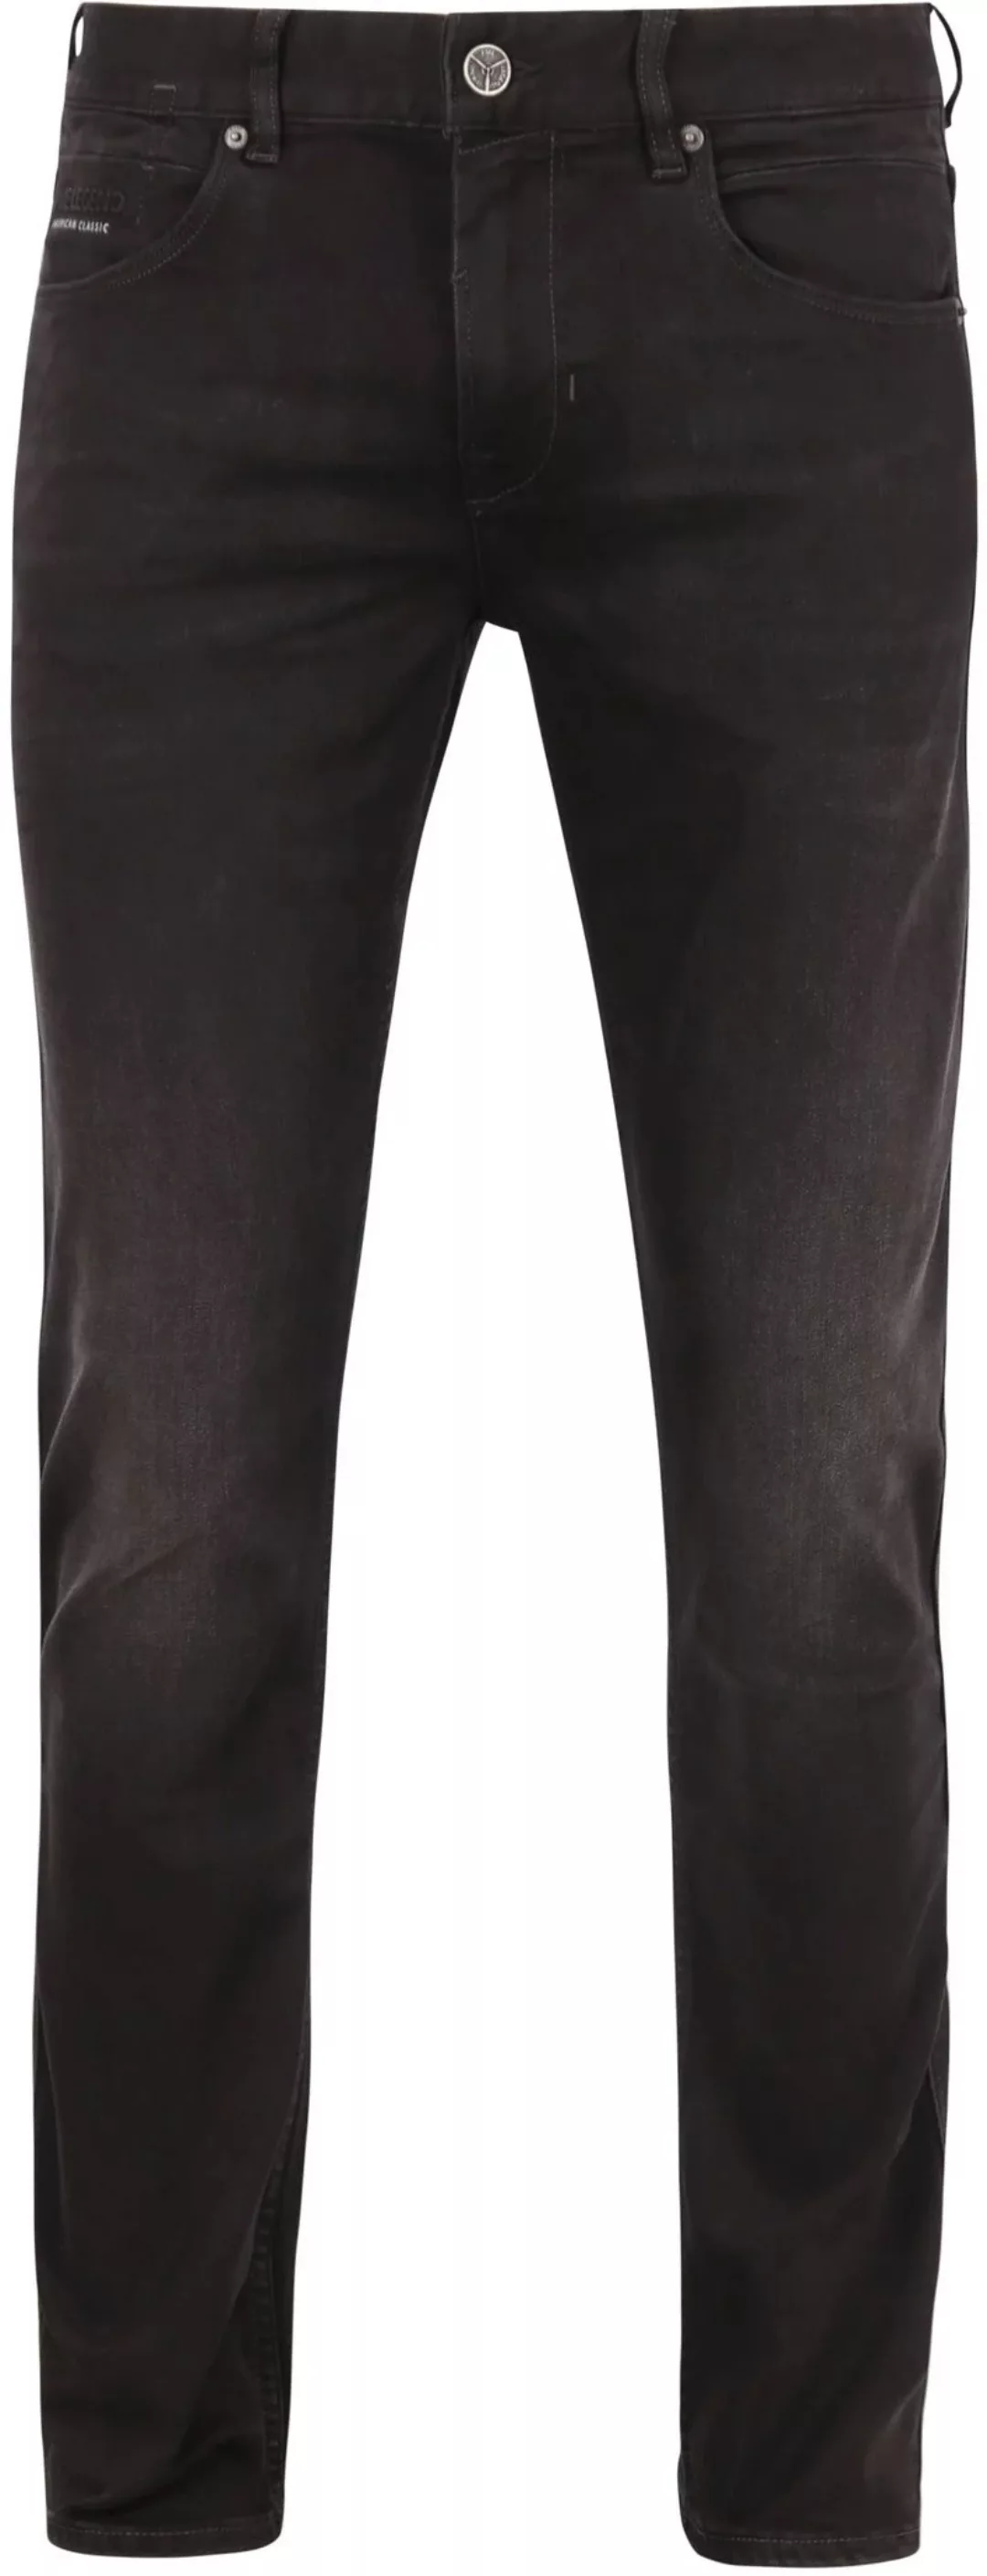 PME Legend Nightflight Jeans Schwarz RBD - Größe W 35 - L 34 günstig online kaufen